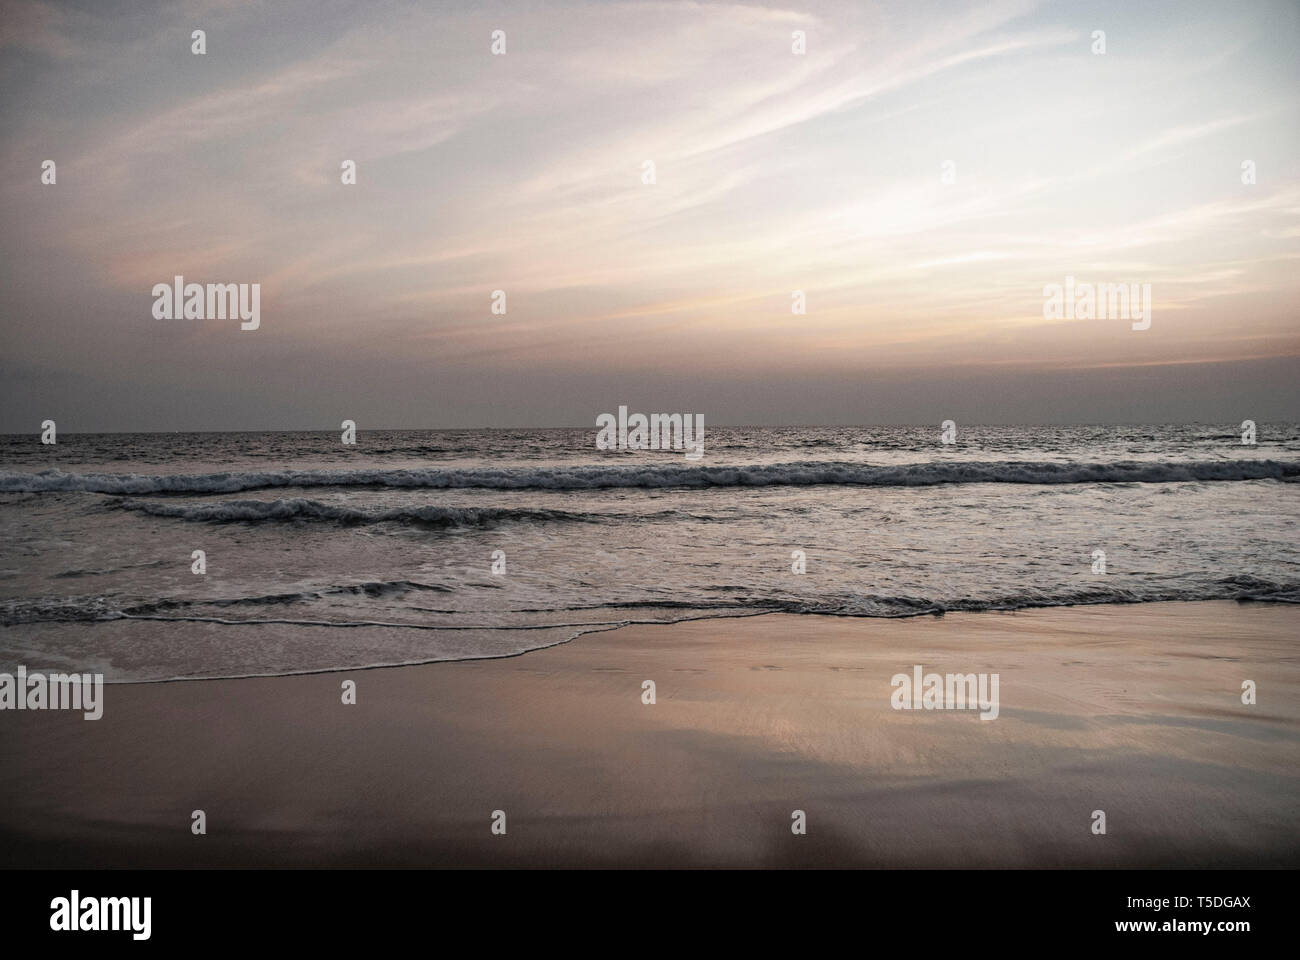 Strand mit Palmen in Cochin in Indien Stockfoto